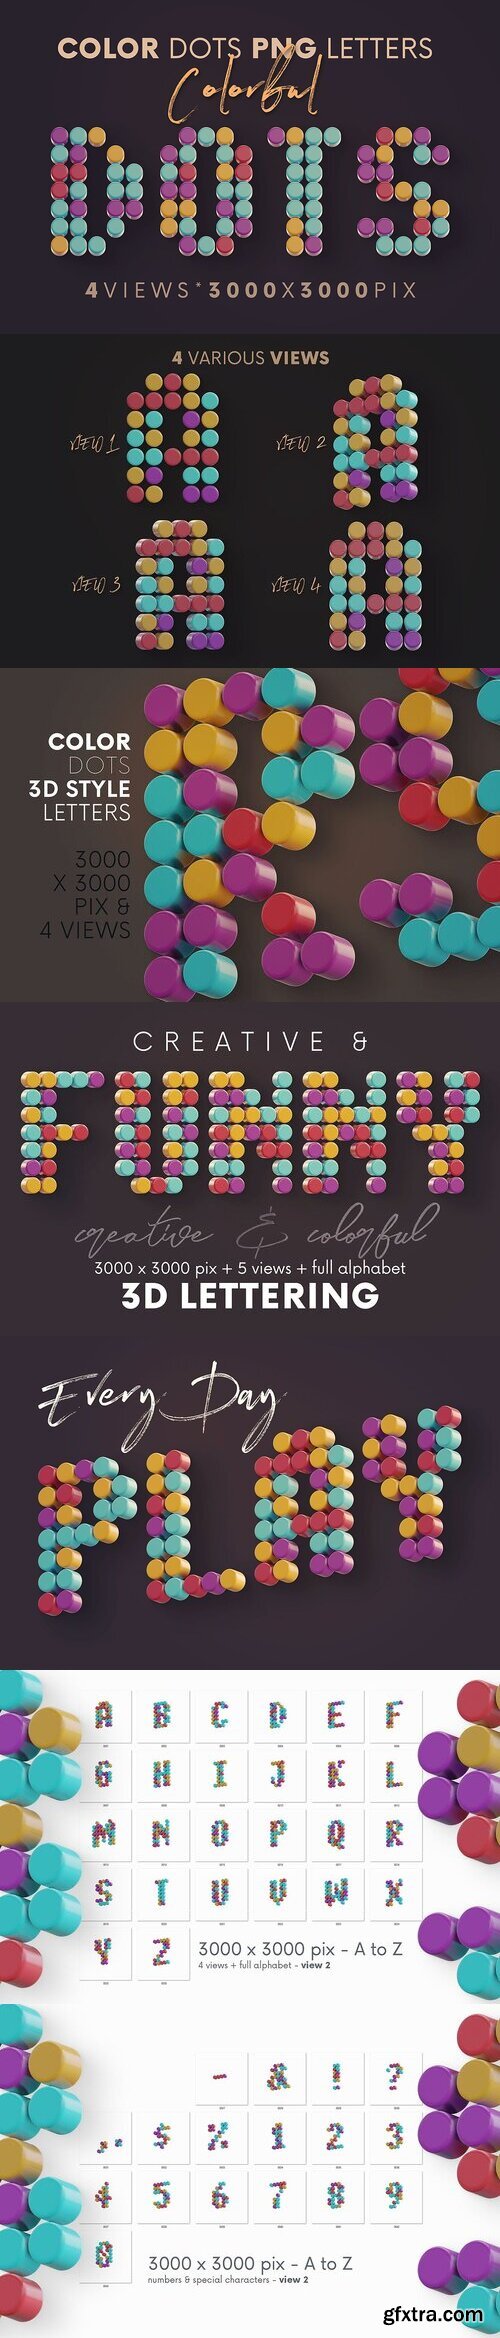 Creativemarket - Color Dots - 3D Lettering 5372107